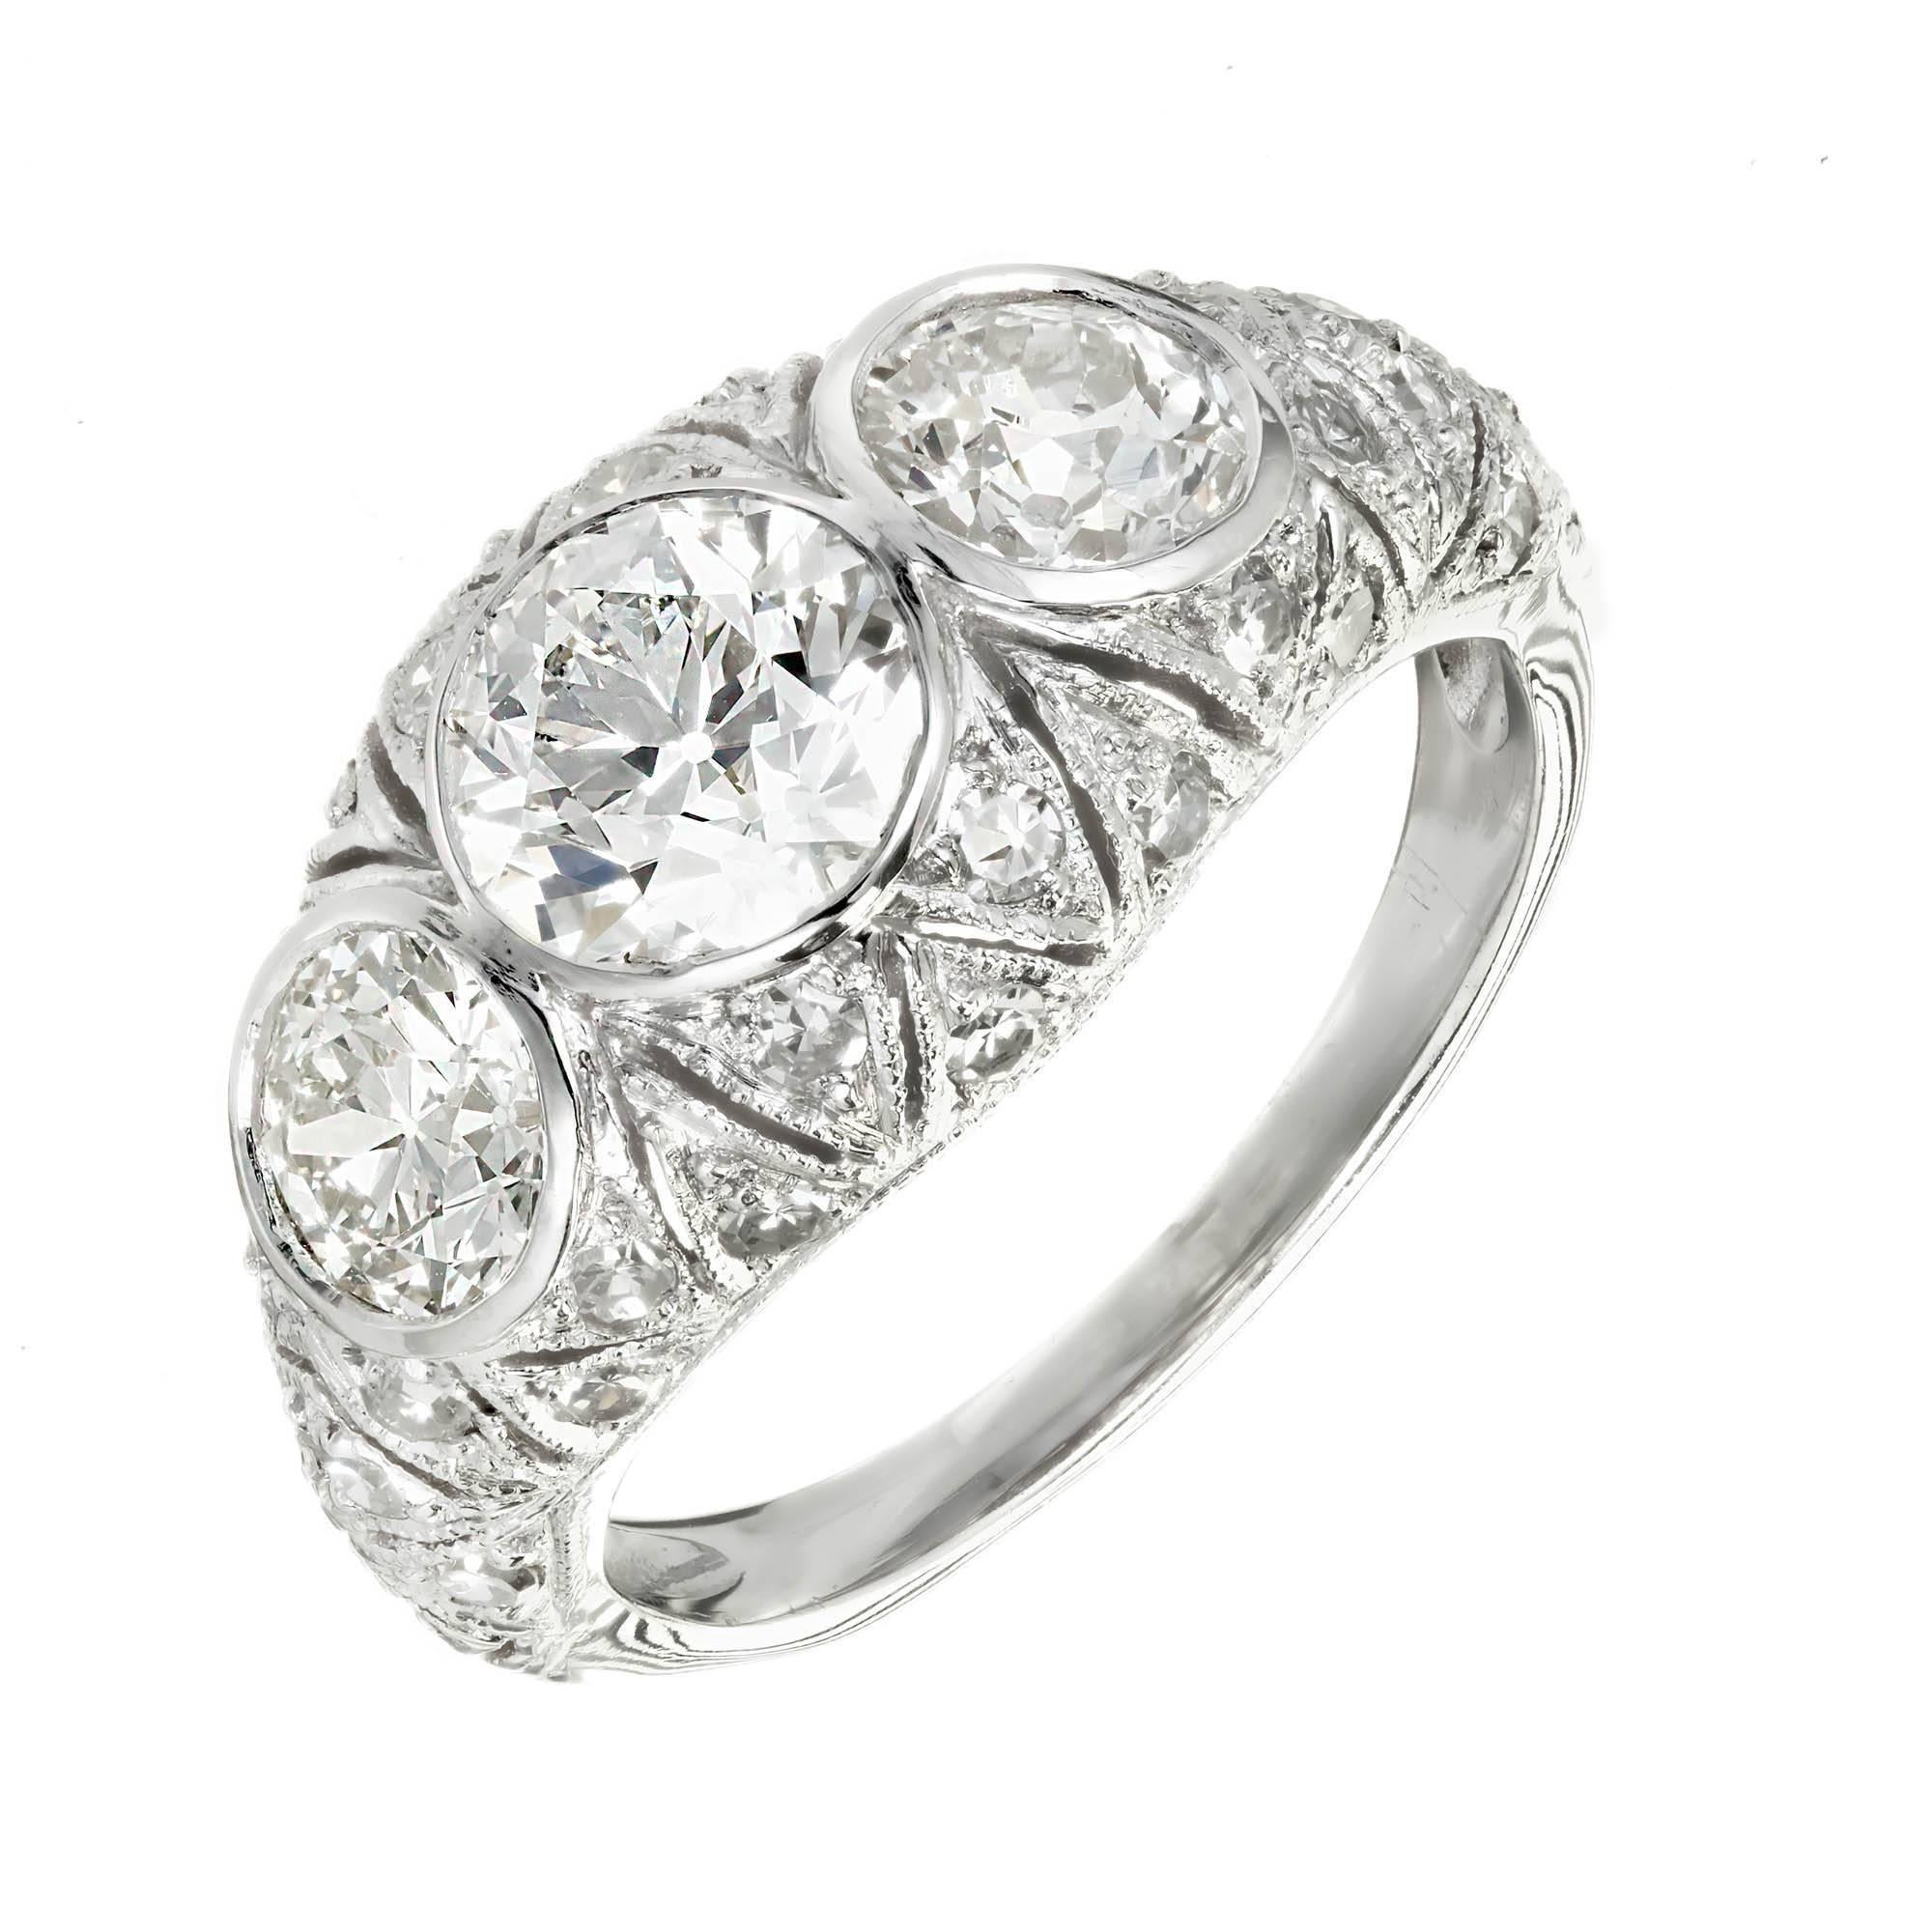 Art Deco Verlobungsring um 1920 - 1925 mit 3 alten europäischen Diamanten im Brillantschliff, komplett mit erhöhten Kronen und kleinen Tafeln. Der Ring hat eine gewölbte Oberseite, die mit Handgravur, durchbohrt und milgrain Perlen Detail getan ist.